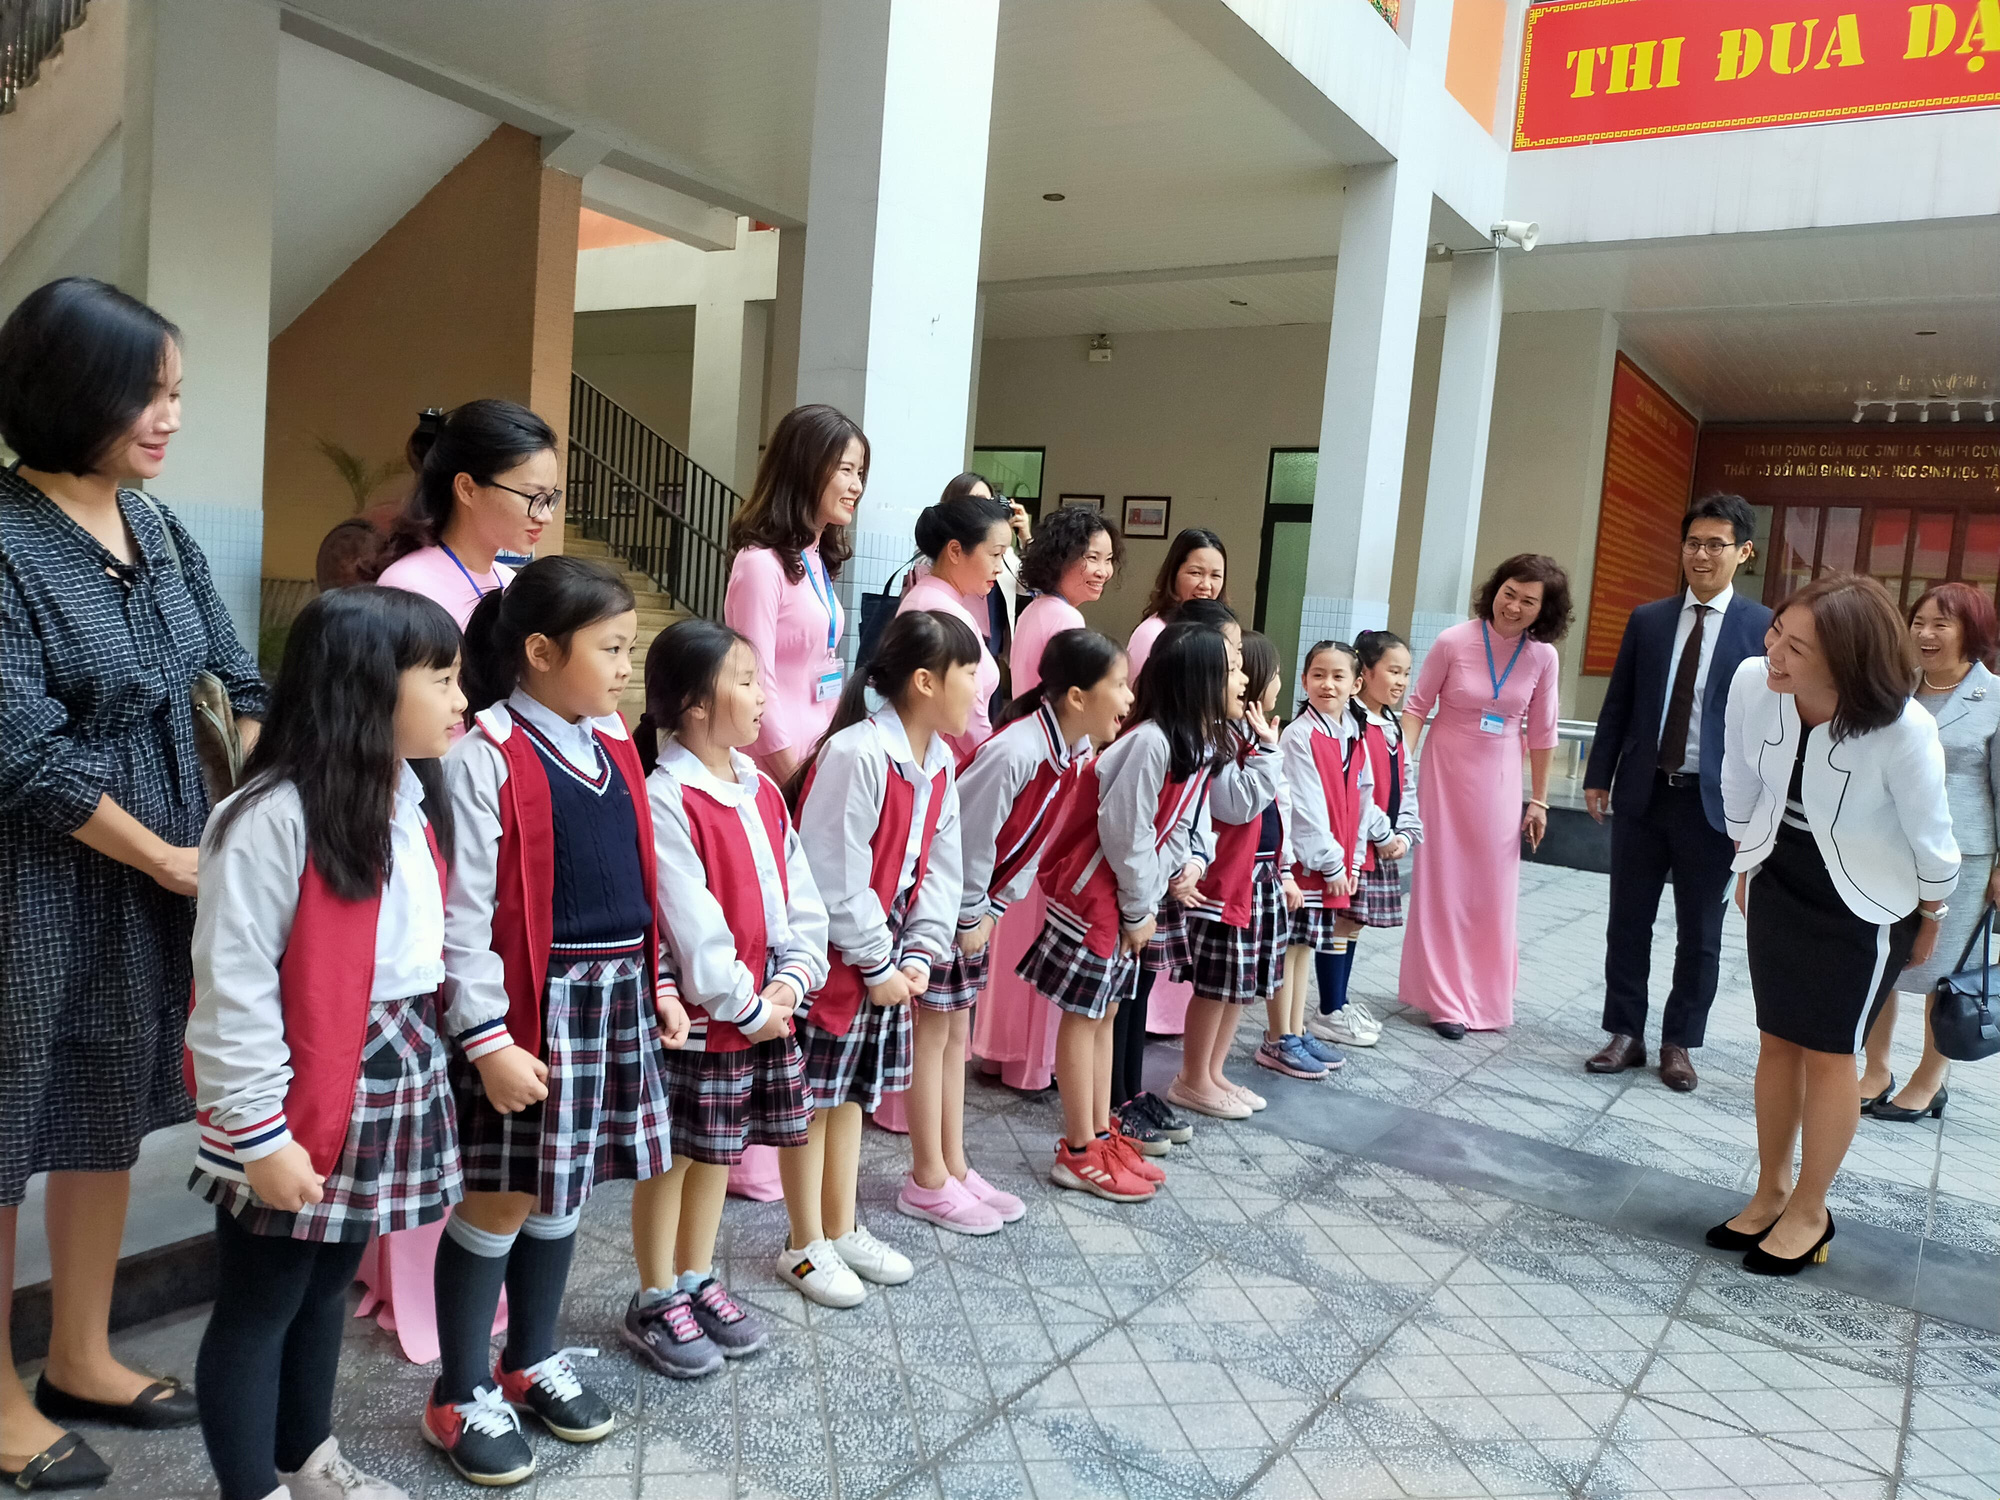 Phu nhân Ngoại trưởng Nhật Bản trò chuyện với học sinh trường Chu Văn An - Ảnh 2.